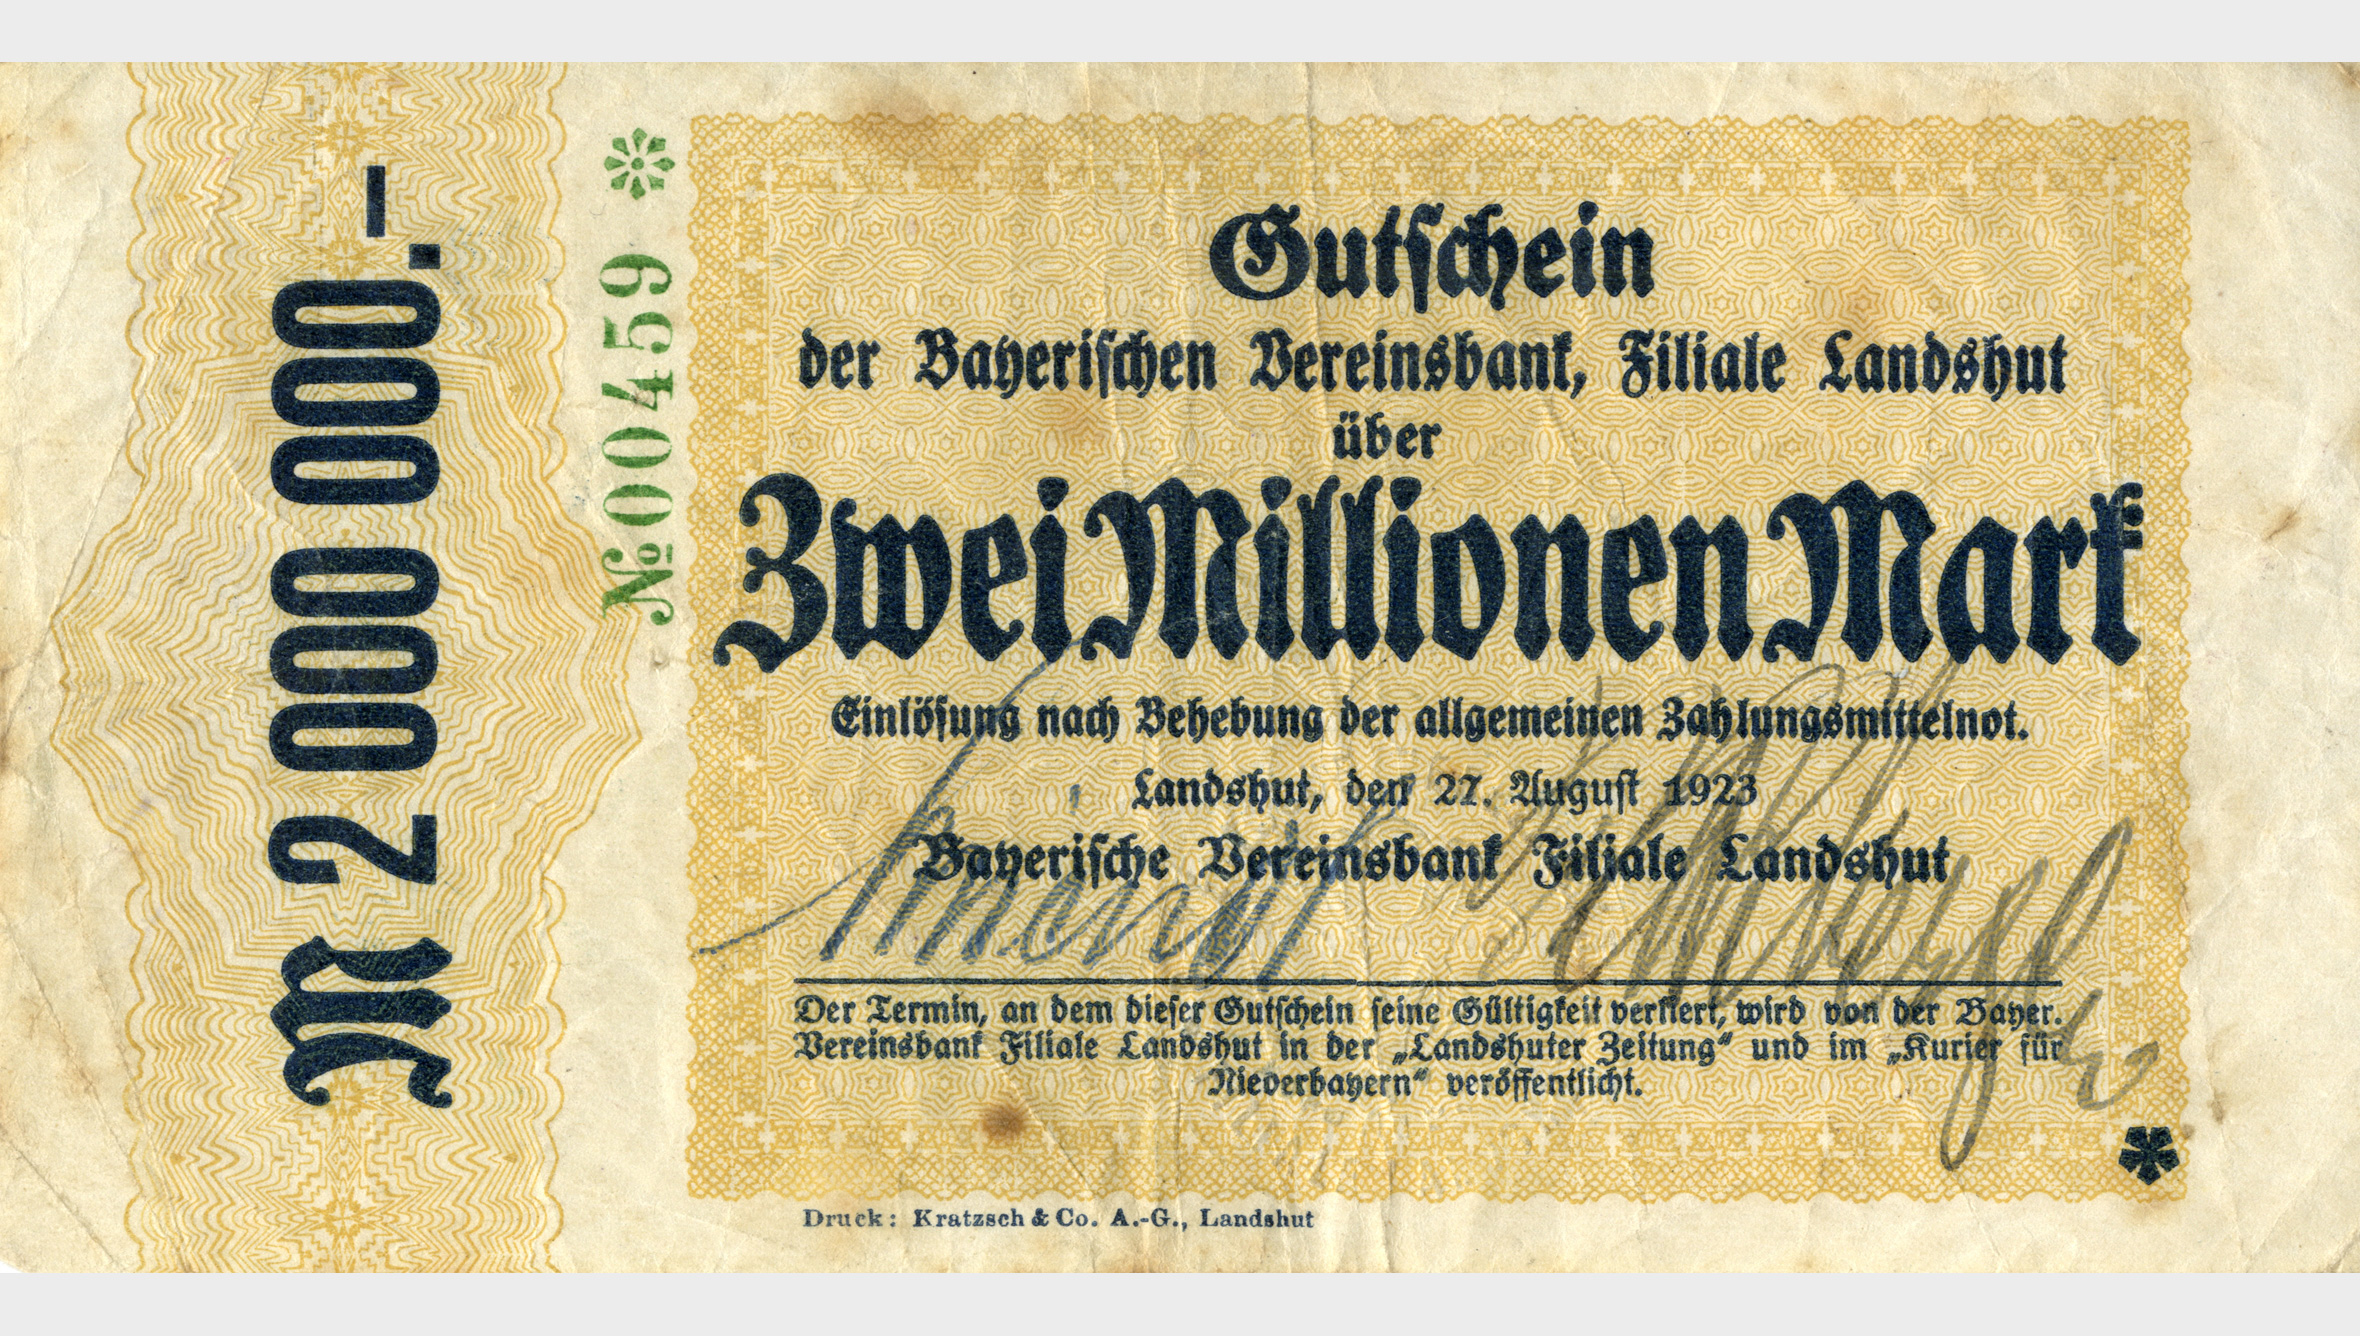 Nach der Inflation 1923 war die Bayerische Vereinsbank zu Rationalisierungsmaßnahmen gezwungen. Sie musste fast zwei Drittel der Filialen schließen. Von 4.300 Angestellten blieben 1.800 übrig.